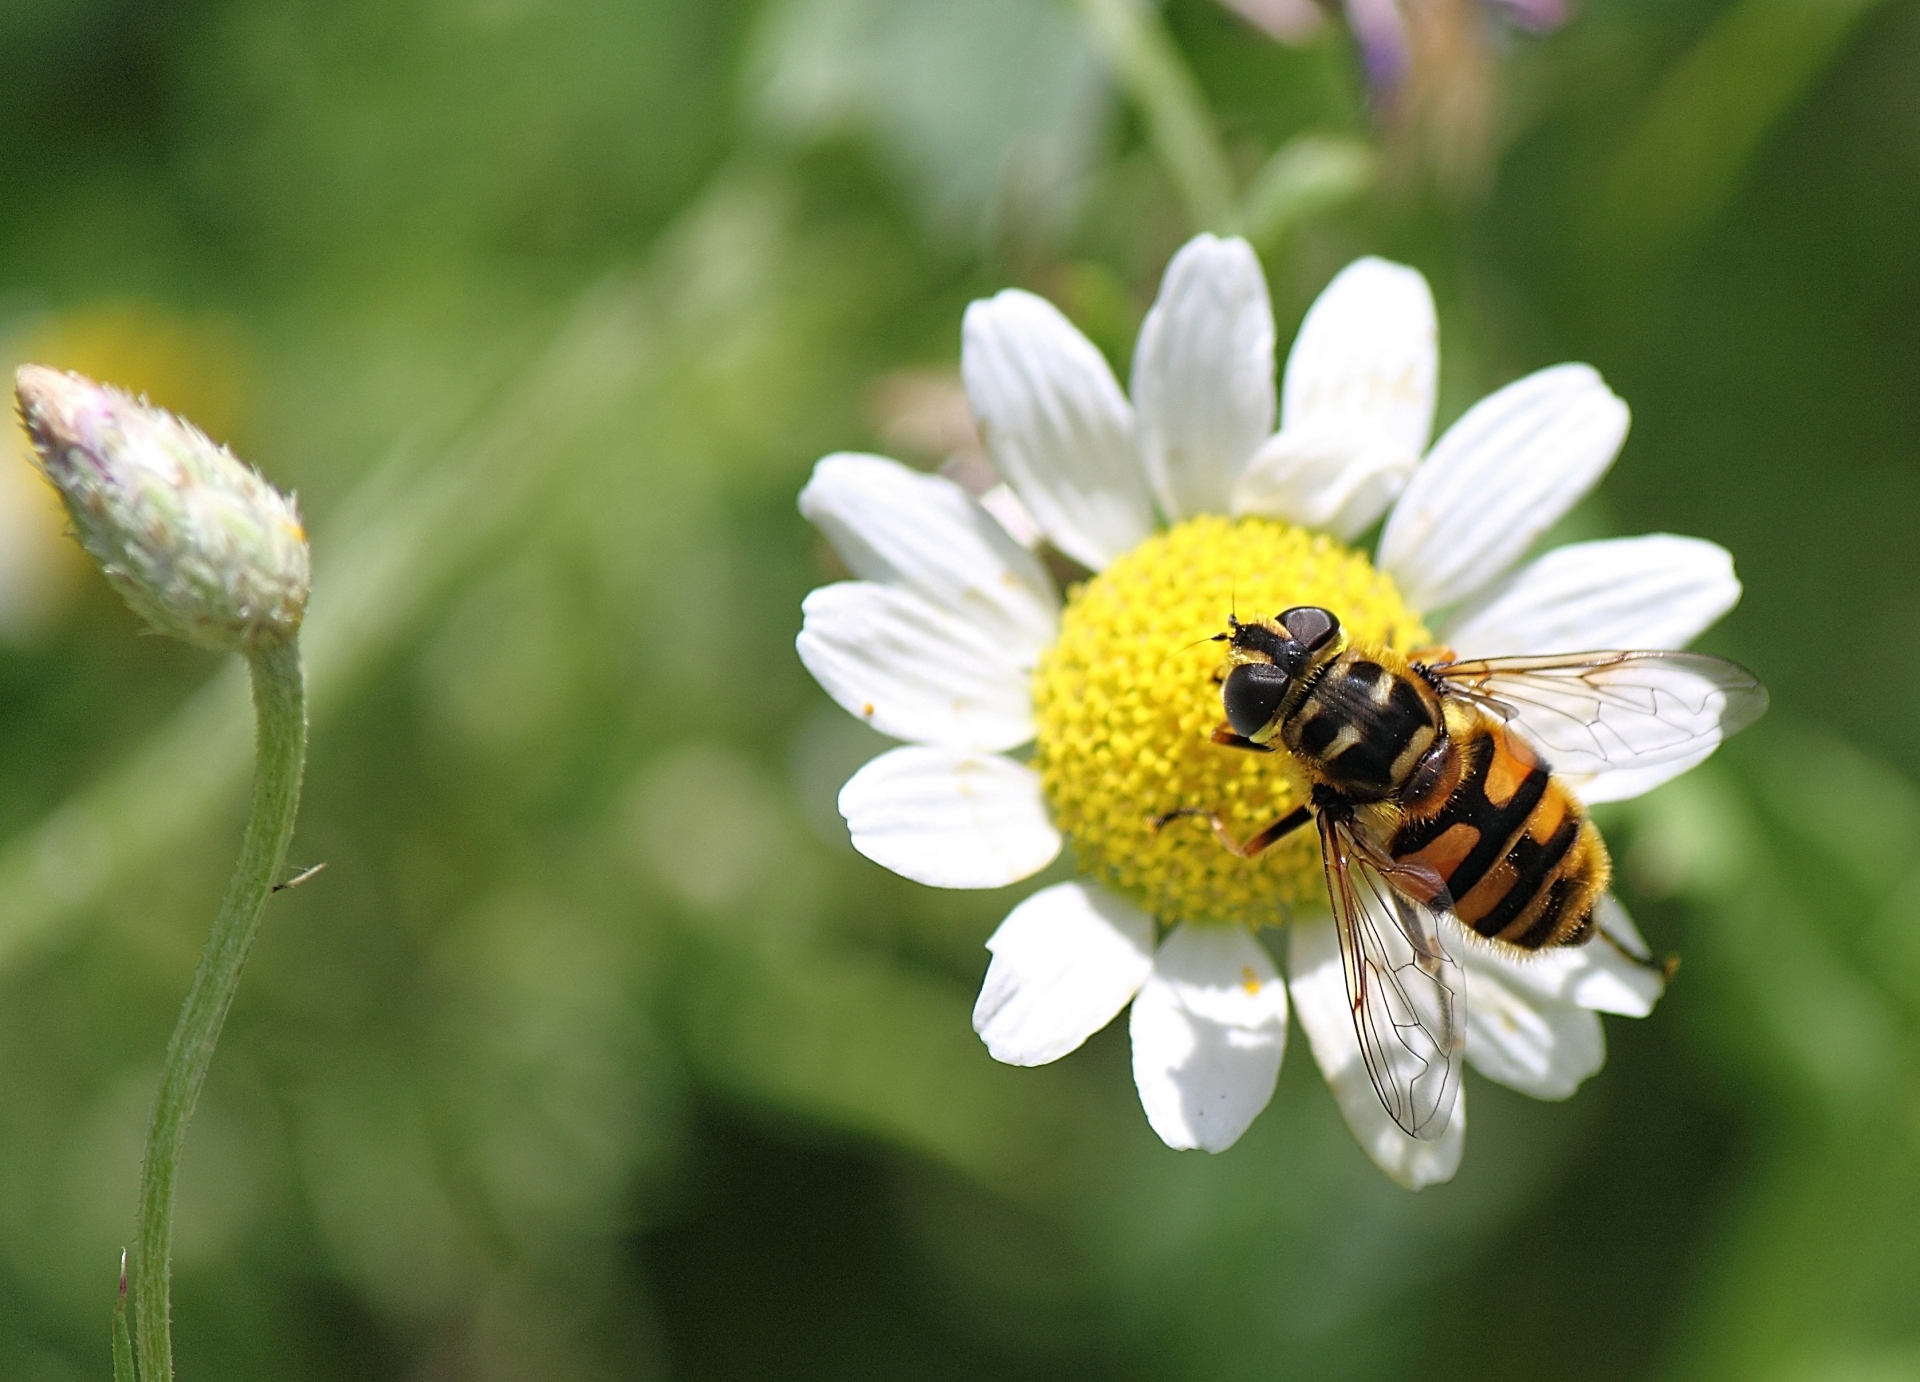 Plan pollinisateurs : les derniers arbitrages qui fâchent